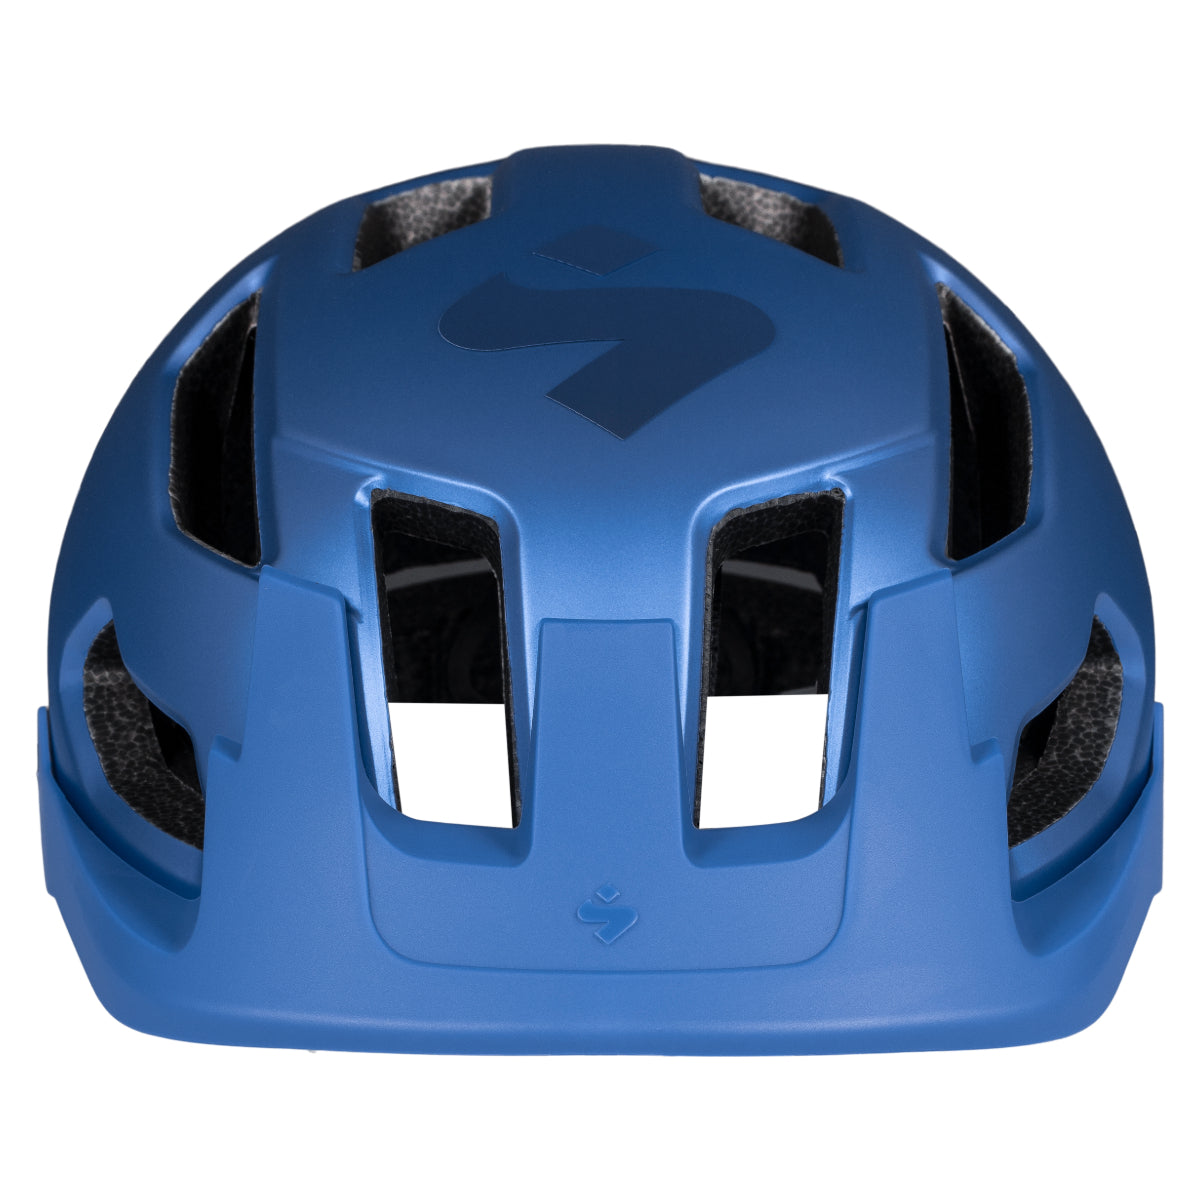 Sweet Protection - Dissenter Helmet Junior - Sky Blue Metallic